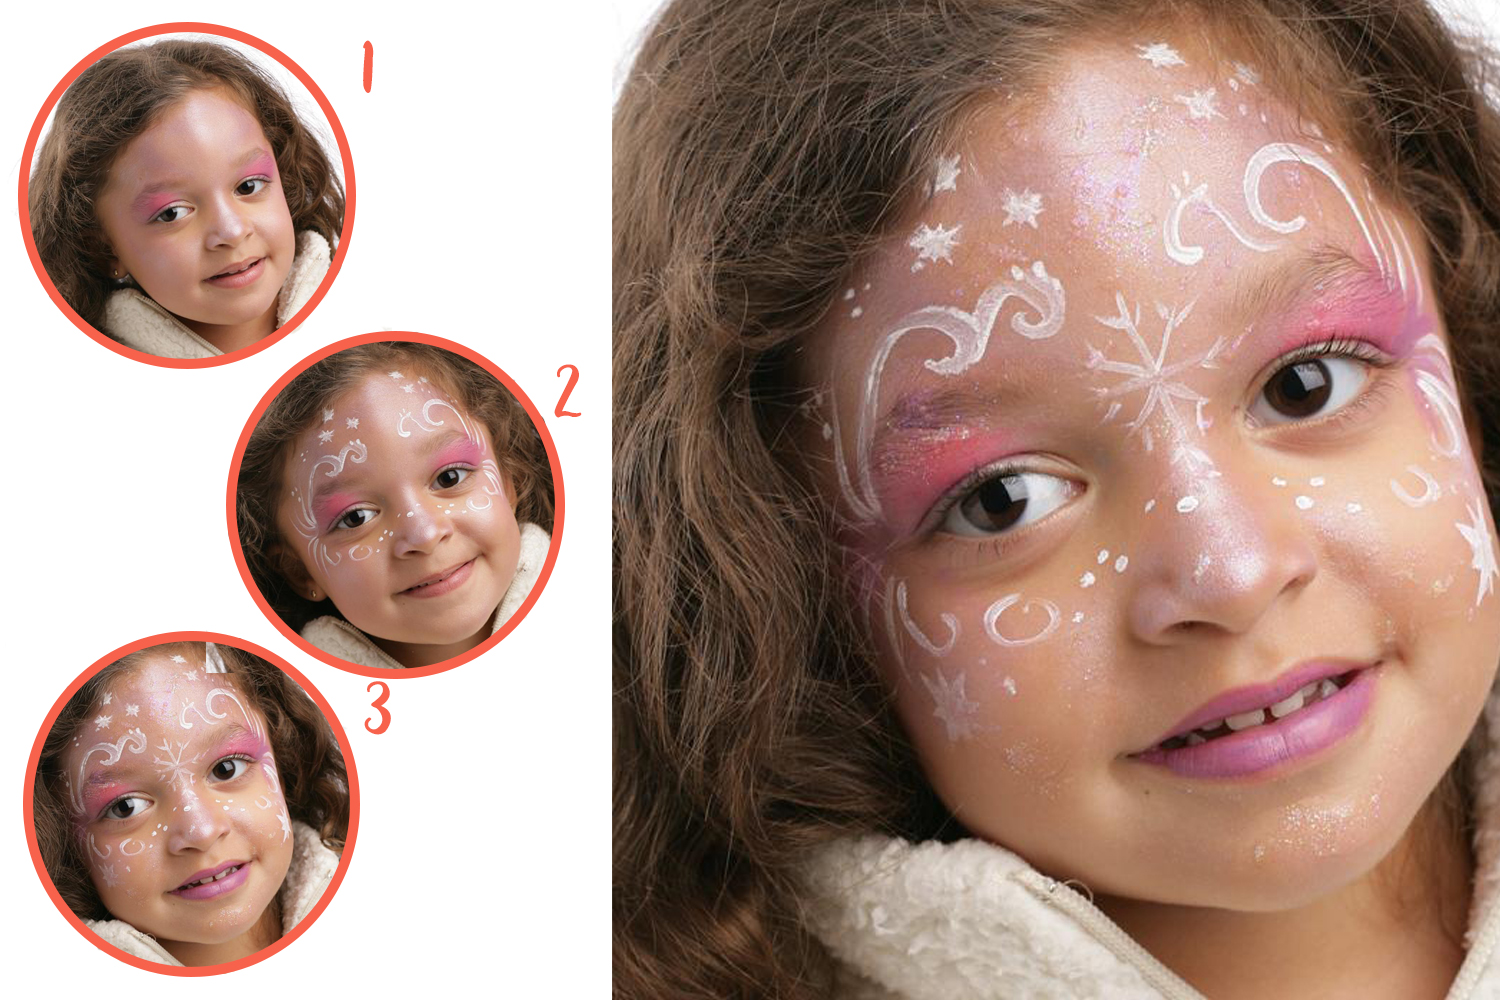 Maxi kit de maquillage enfant - 17 couleurs + accessoires - Maquillage - 10  Doigts